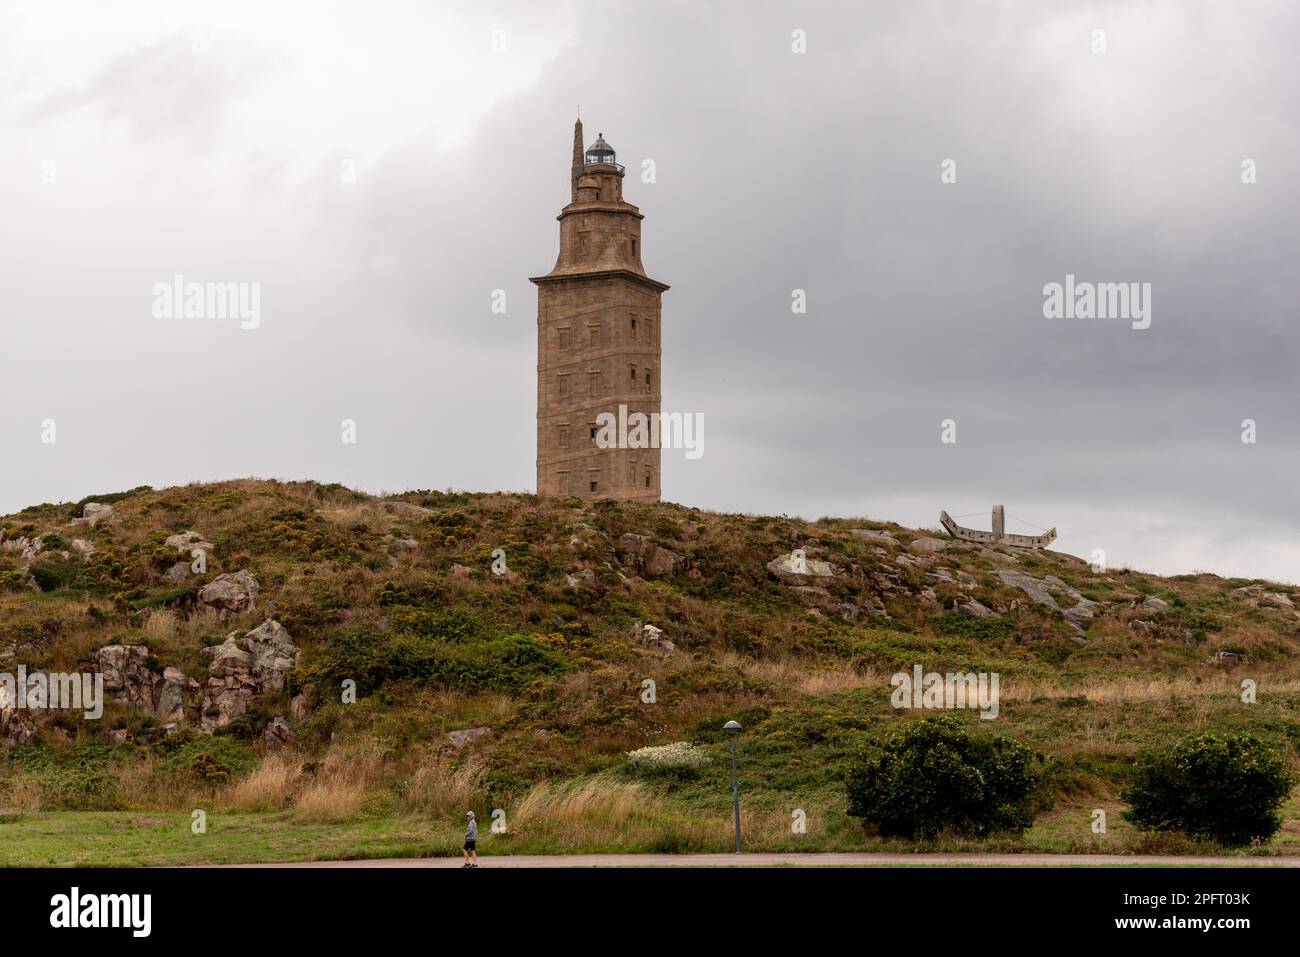 Der Torre de Herkules, ein antiker römischer Leuchtturm und Symbol von La Coruña, Galicien, Spanien, steht hoch vor dem blauen Himmel und bietet einen Blick auf die Stadt Stockfoto